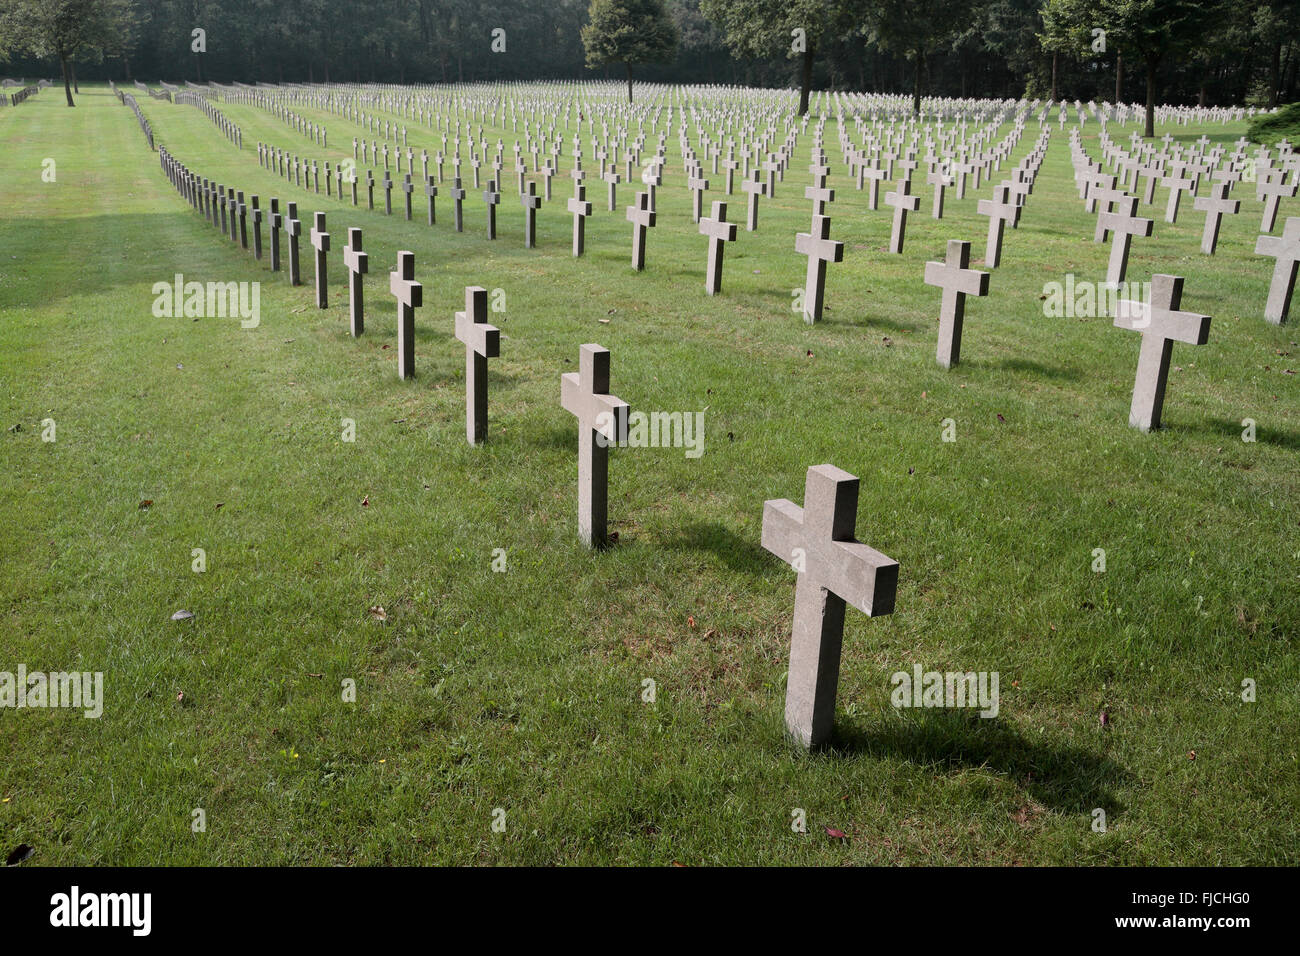 Lines of graves in the Ysselsteyn German war cemetery, Ysselsteyn, Netherlands. Stock Photo